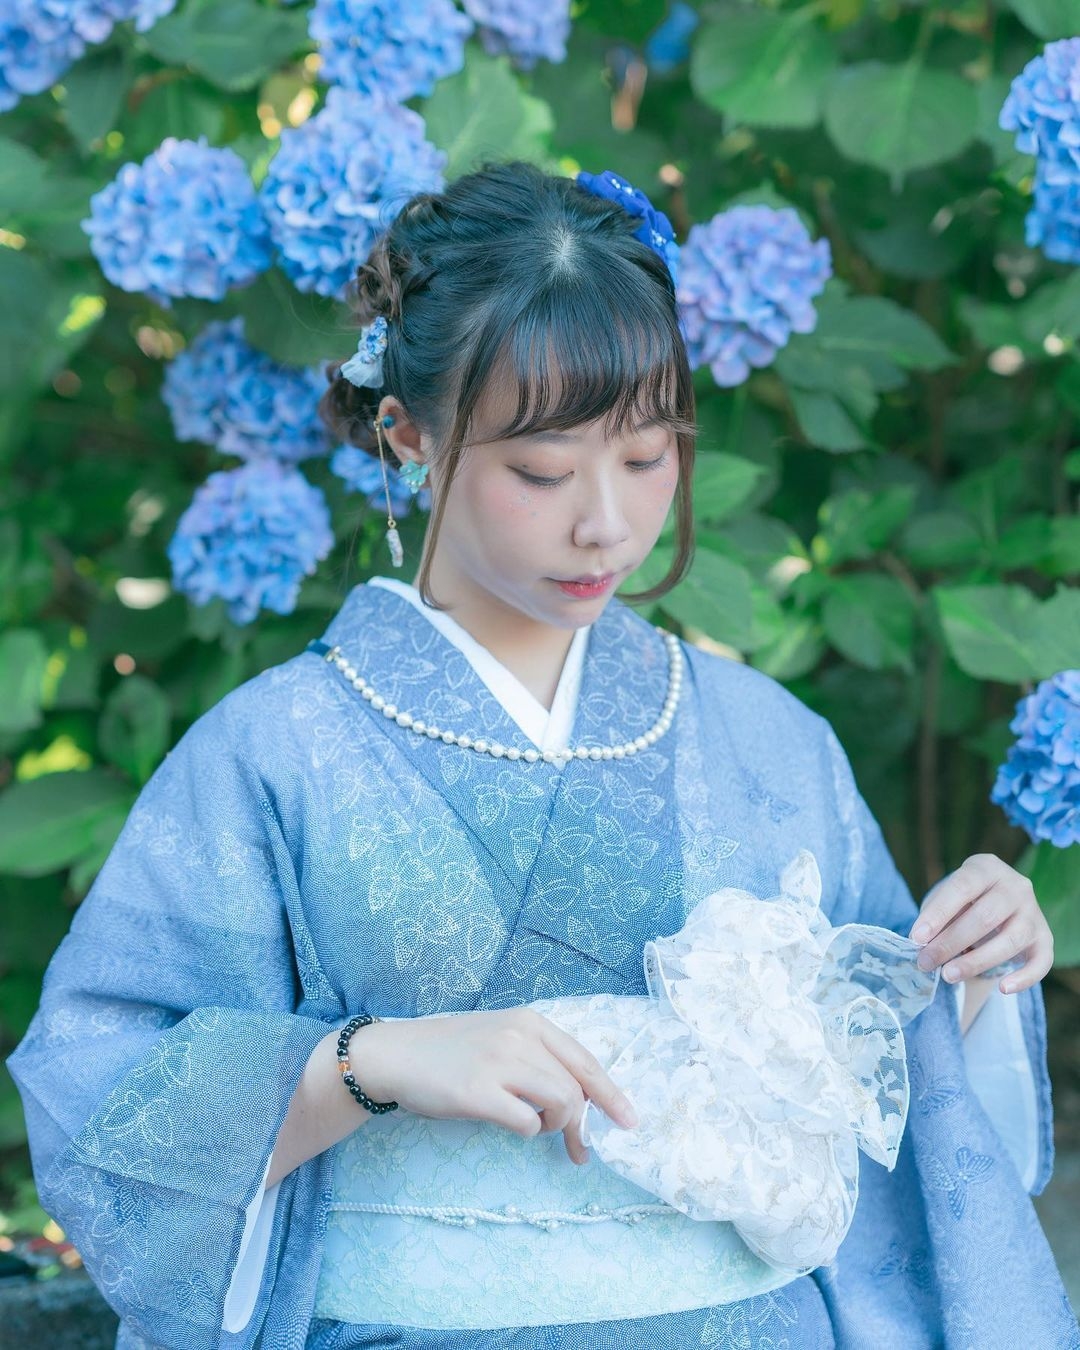 日本新興 洋風和服 混合歐式古典元素 優雅蕾絲配柔和珍珠花飾 充滿仙氣 Girlstyle 女生日常